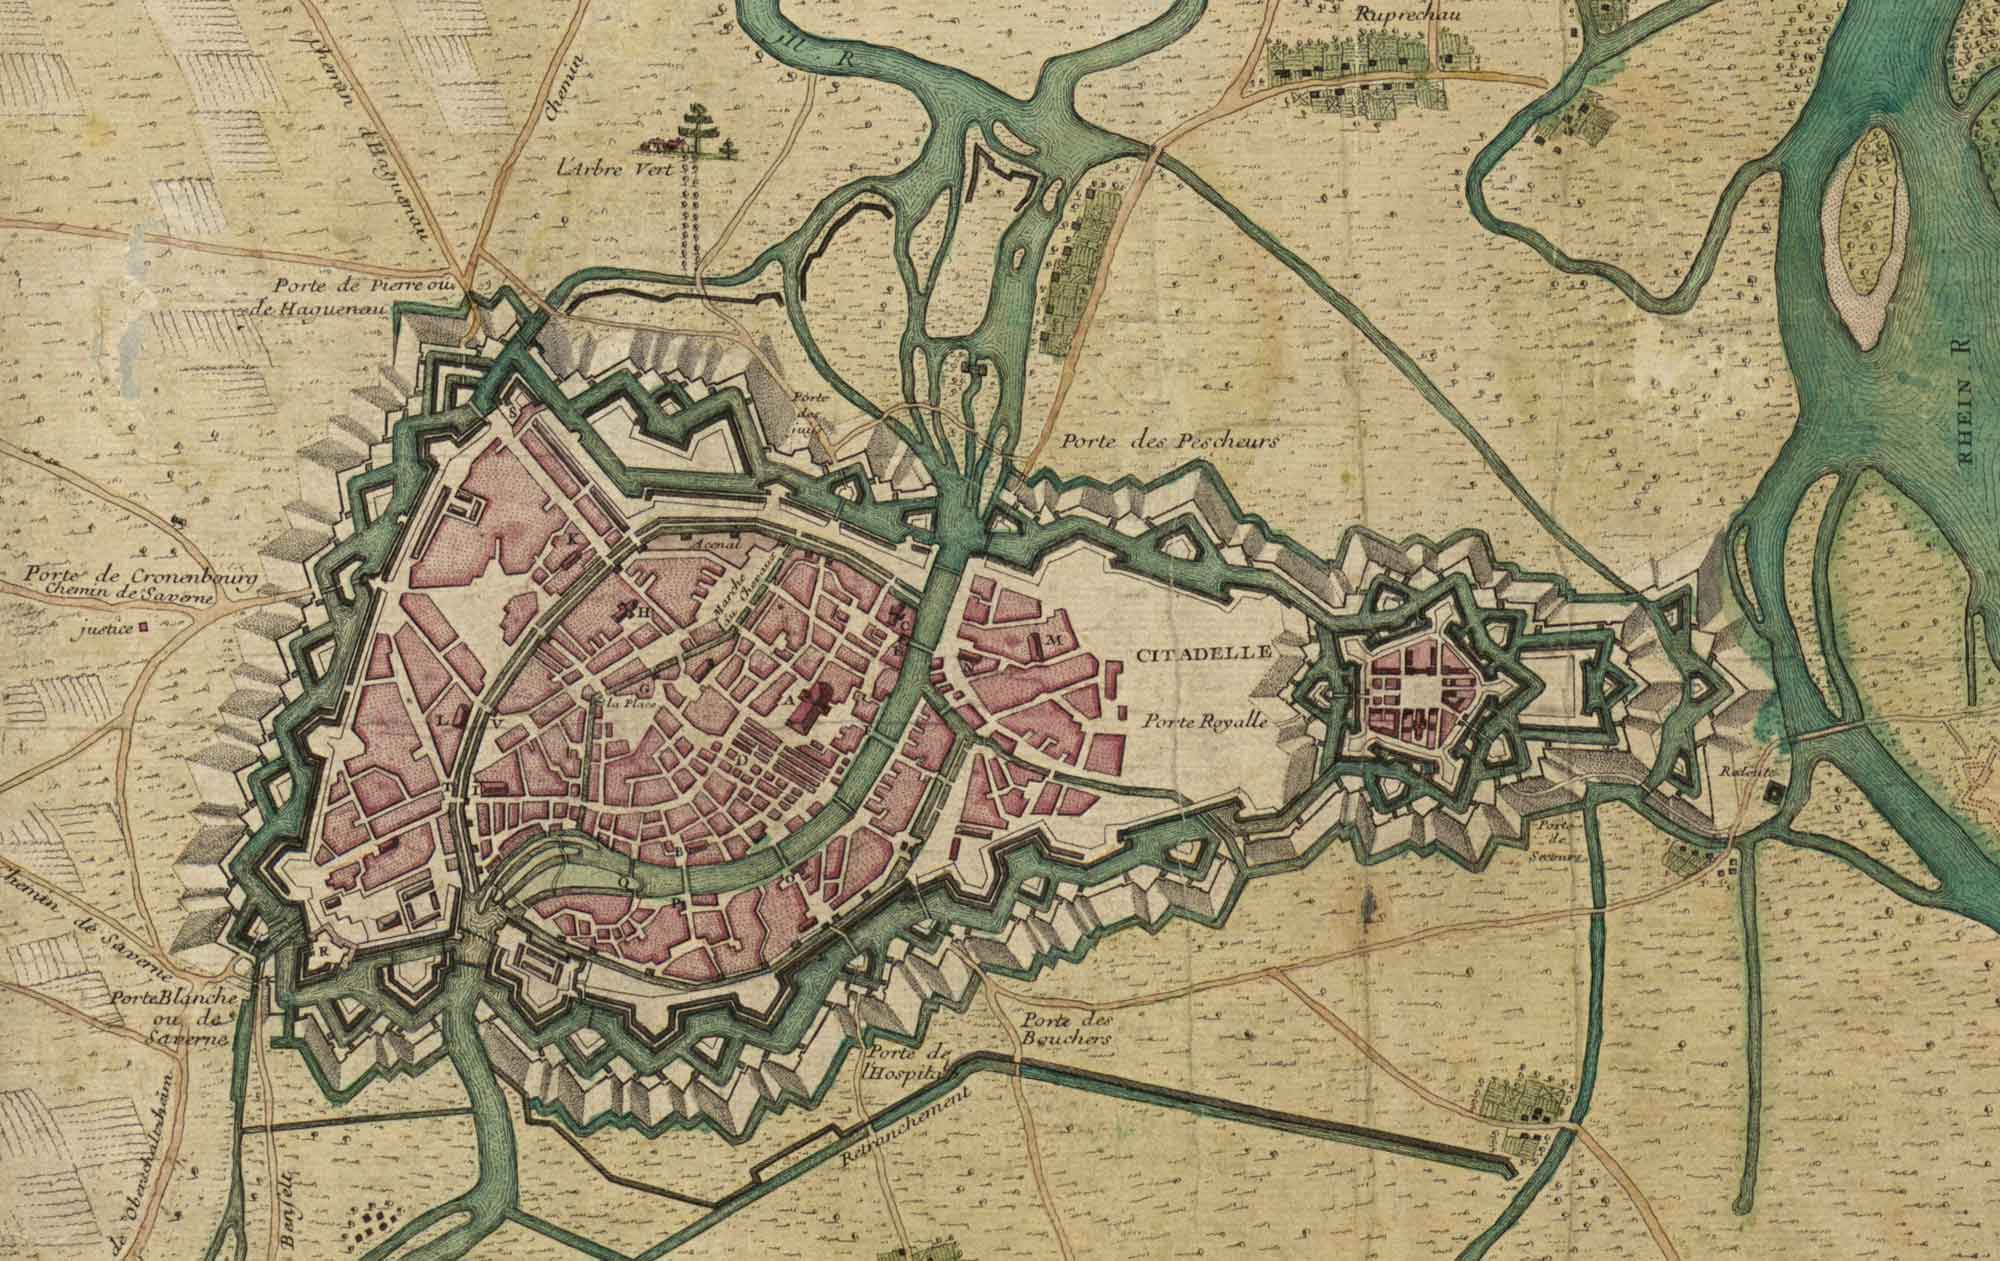 Map of Strasbourg in 1720